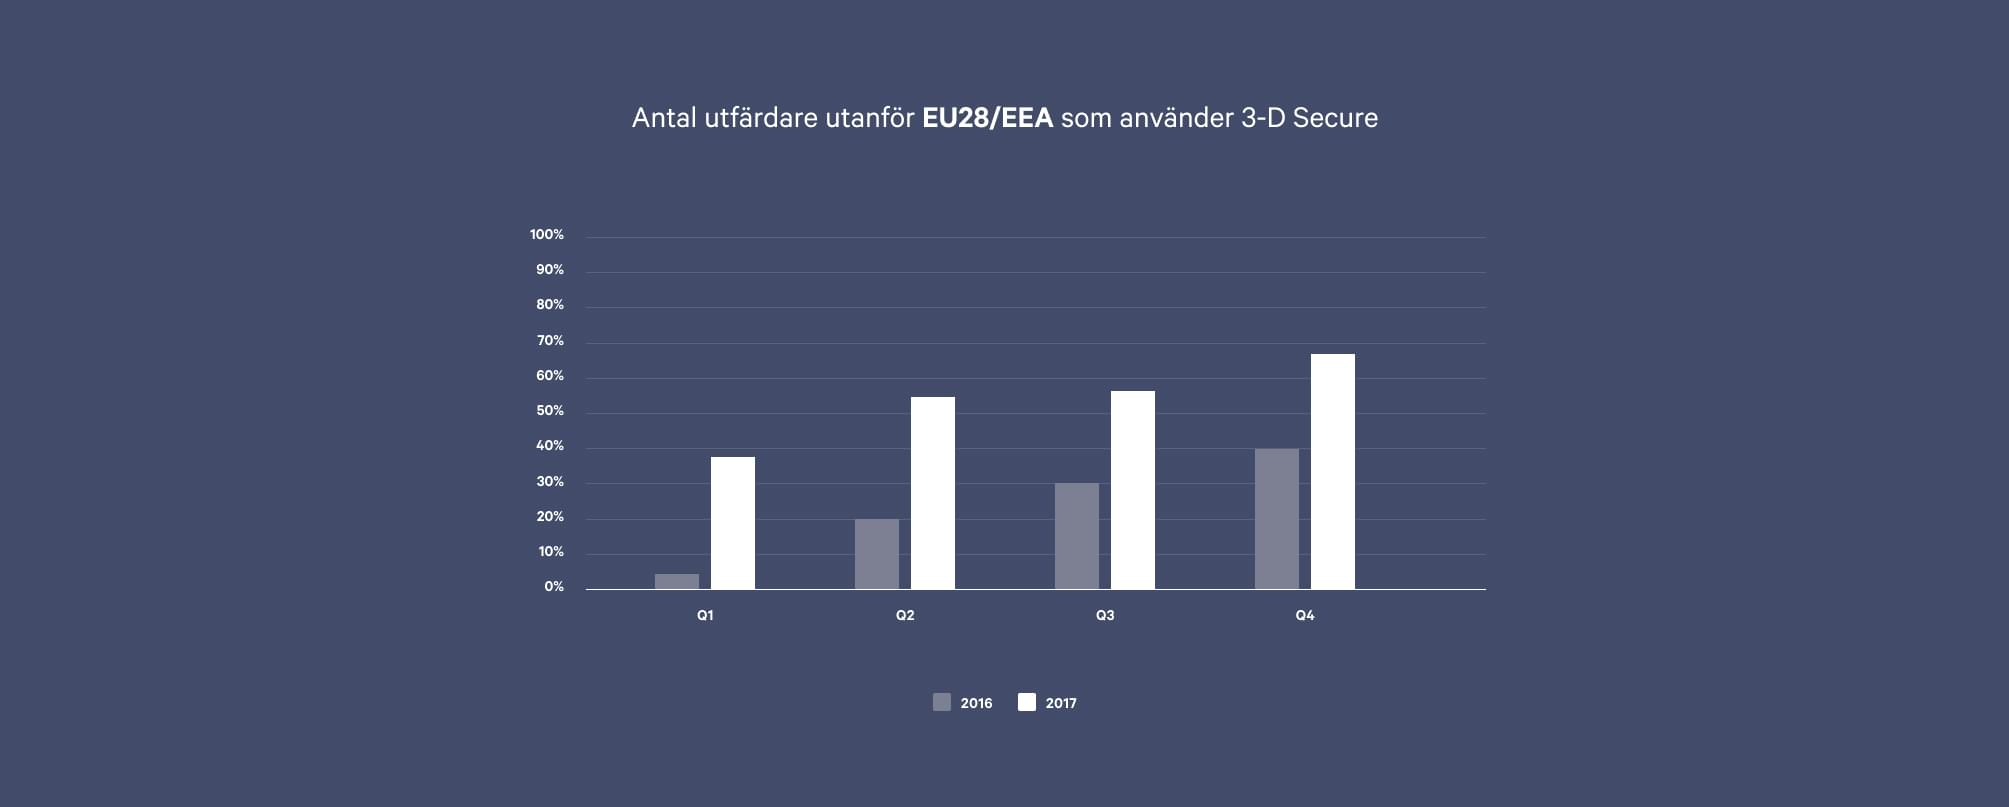 En översikt över 3-D Secure bland utfärdande banker utanför EU28 eller EEA. Antalet banker utanför EU28 eller EEA som använder 3-D Secure har ökat drastiskt mellan 2016 till 2017.